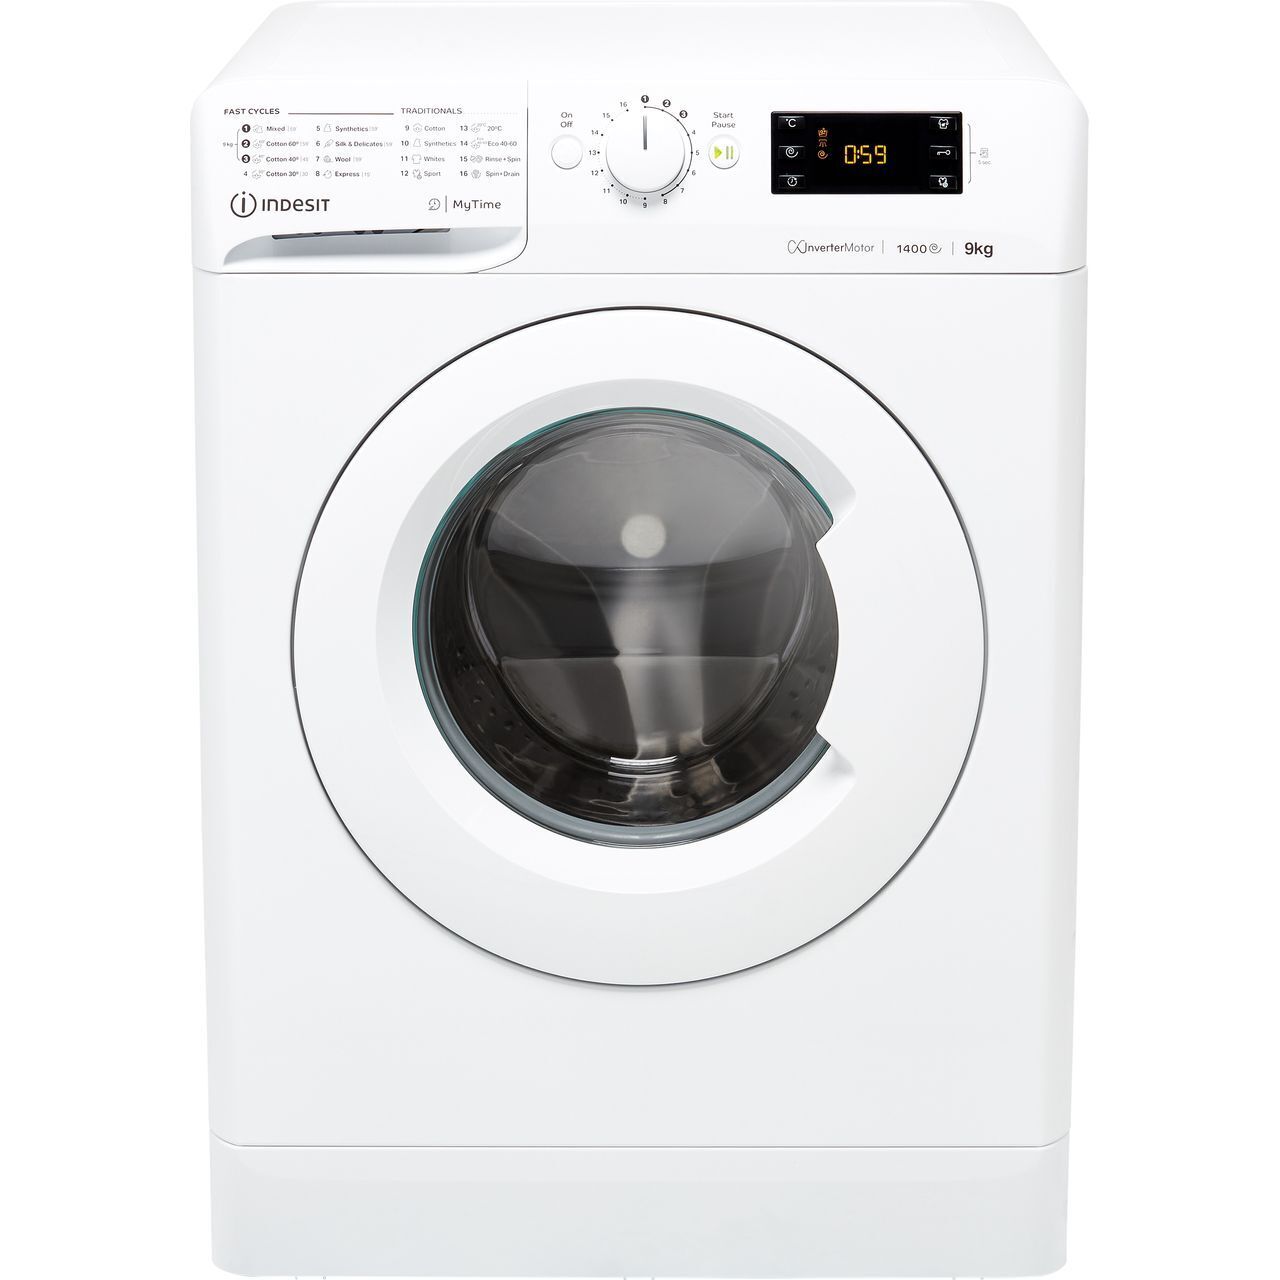 Indesit 9Kg Washing Machine, White, B Rated